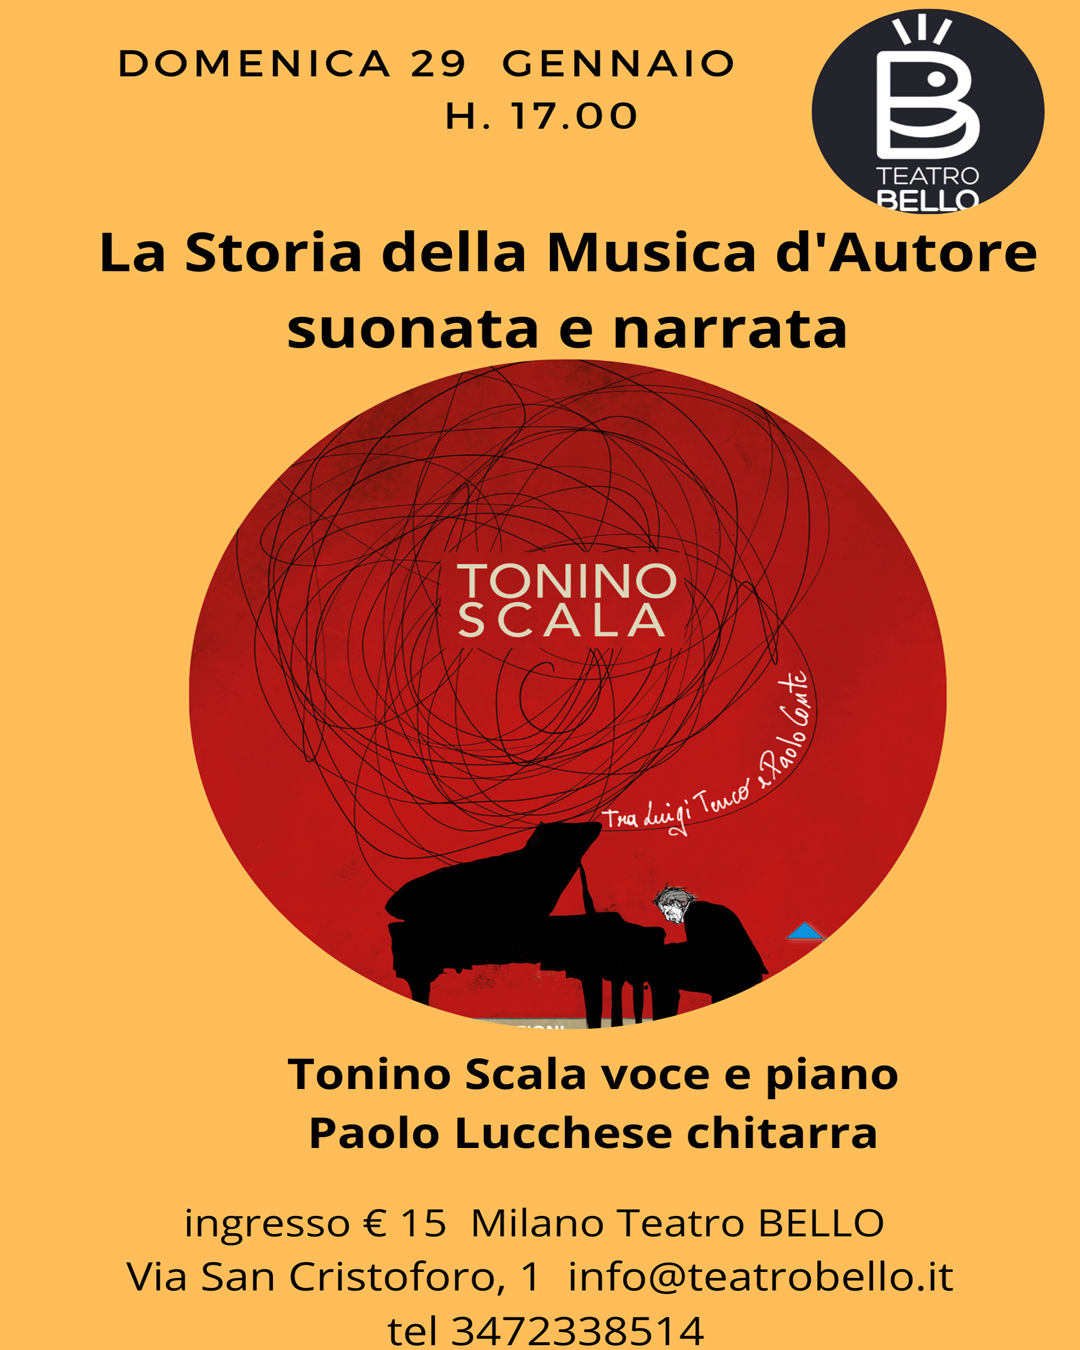 Storia della musica d'autore suonata e narrata, sabato 29 al Teatro Bello  con Tonino Scala la scuola genovese. - Gazzetta di Milano